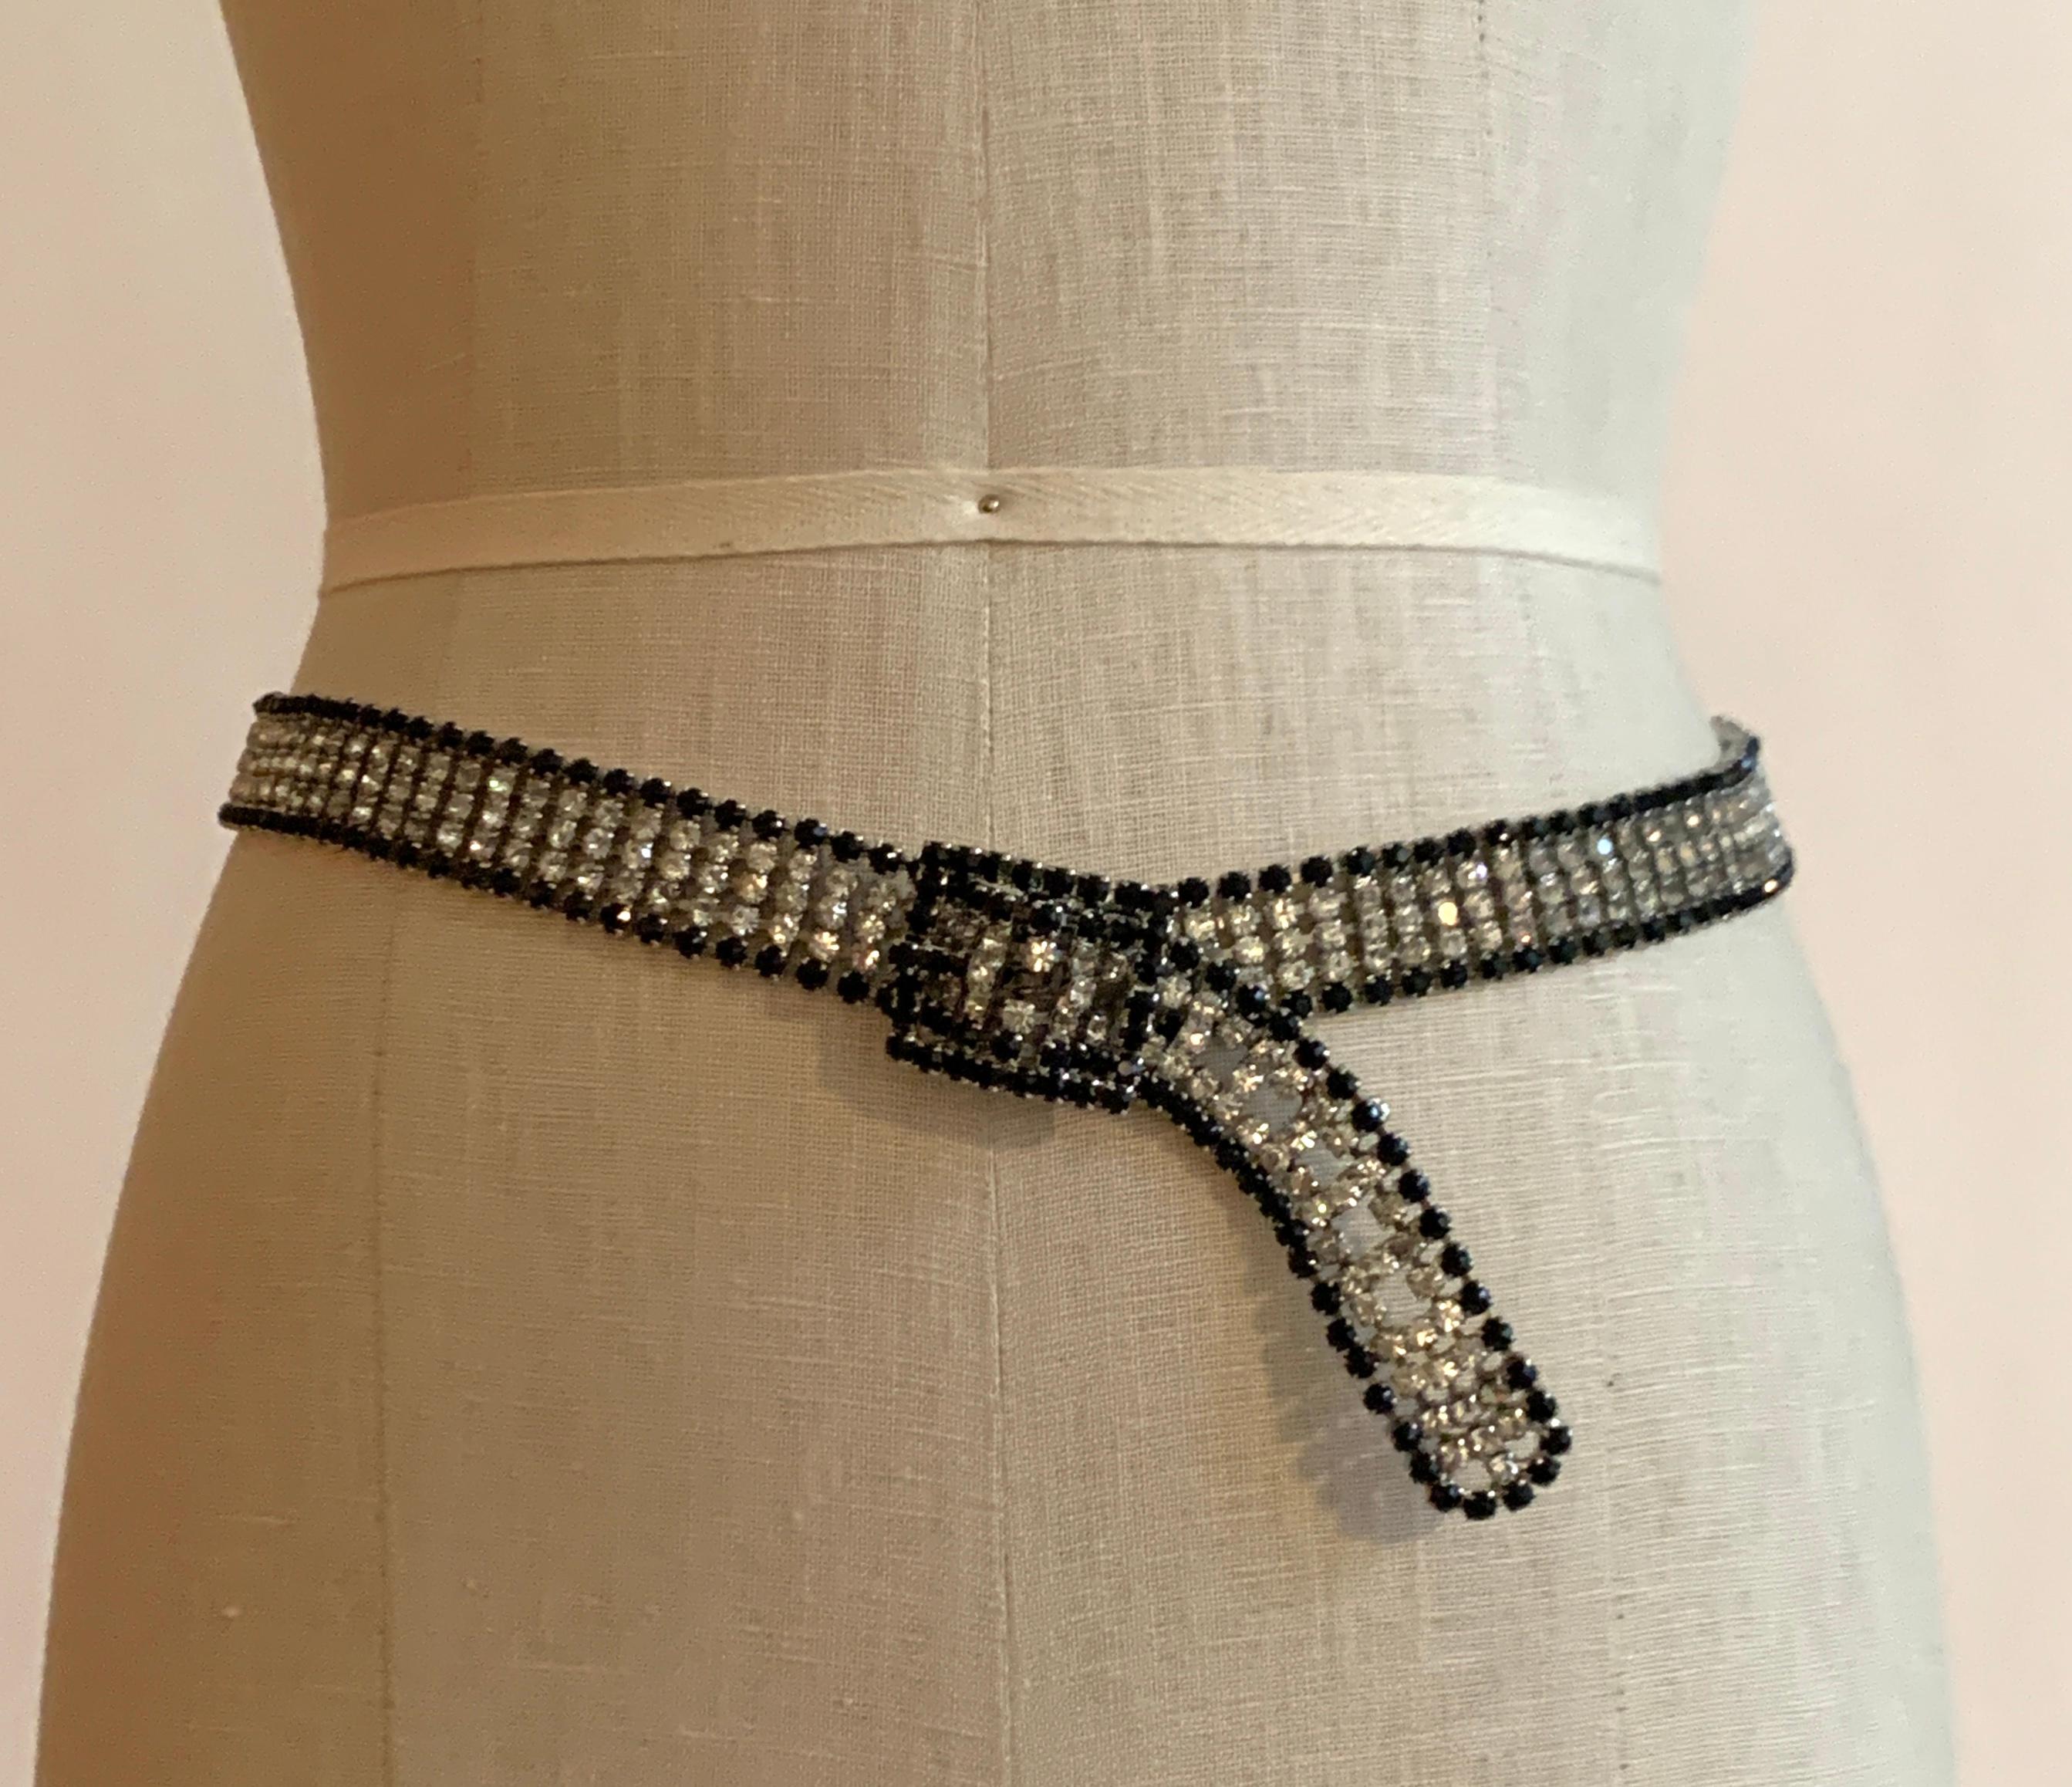 Superbe ceinture vintage en métal (estimée vers les années 1970) avec des strass clairs/blancs et une bordure de strass noirs dans un métal argenté. Fermeture à boucle. 

Parfait pour rendre une simple robe de soirée un peu plus spéciale ! 

La